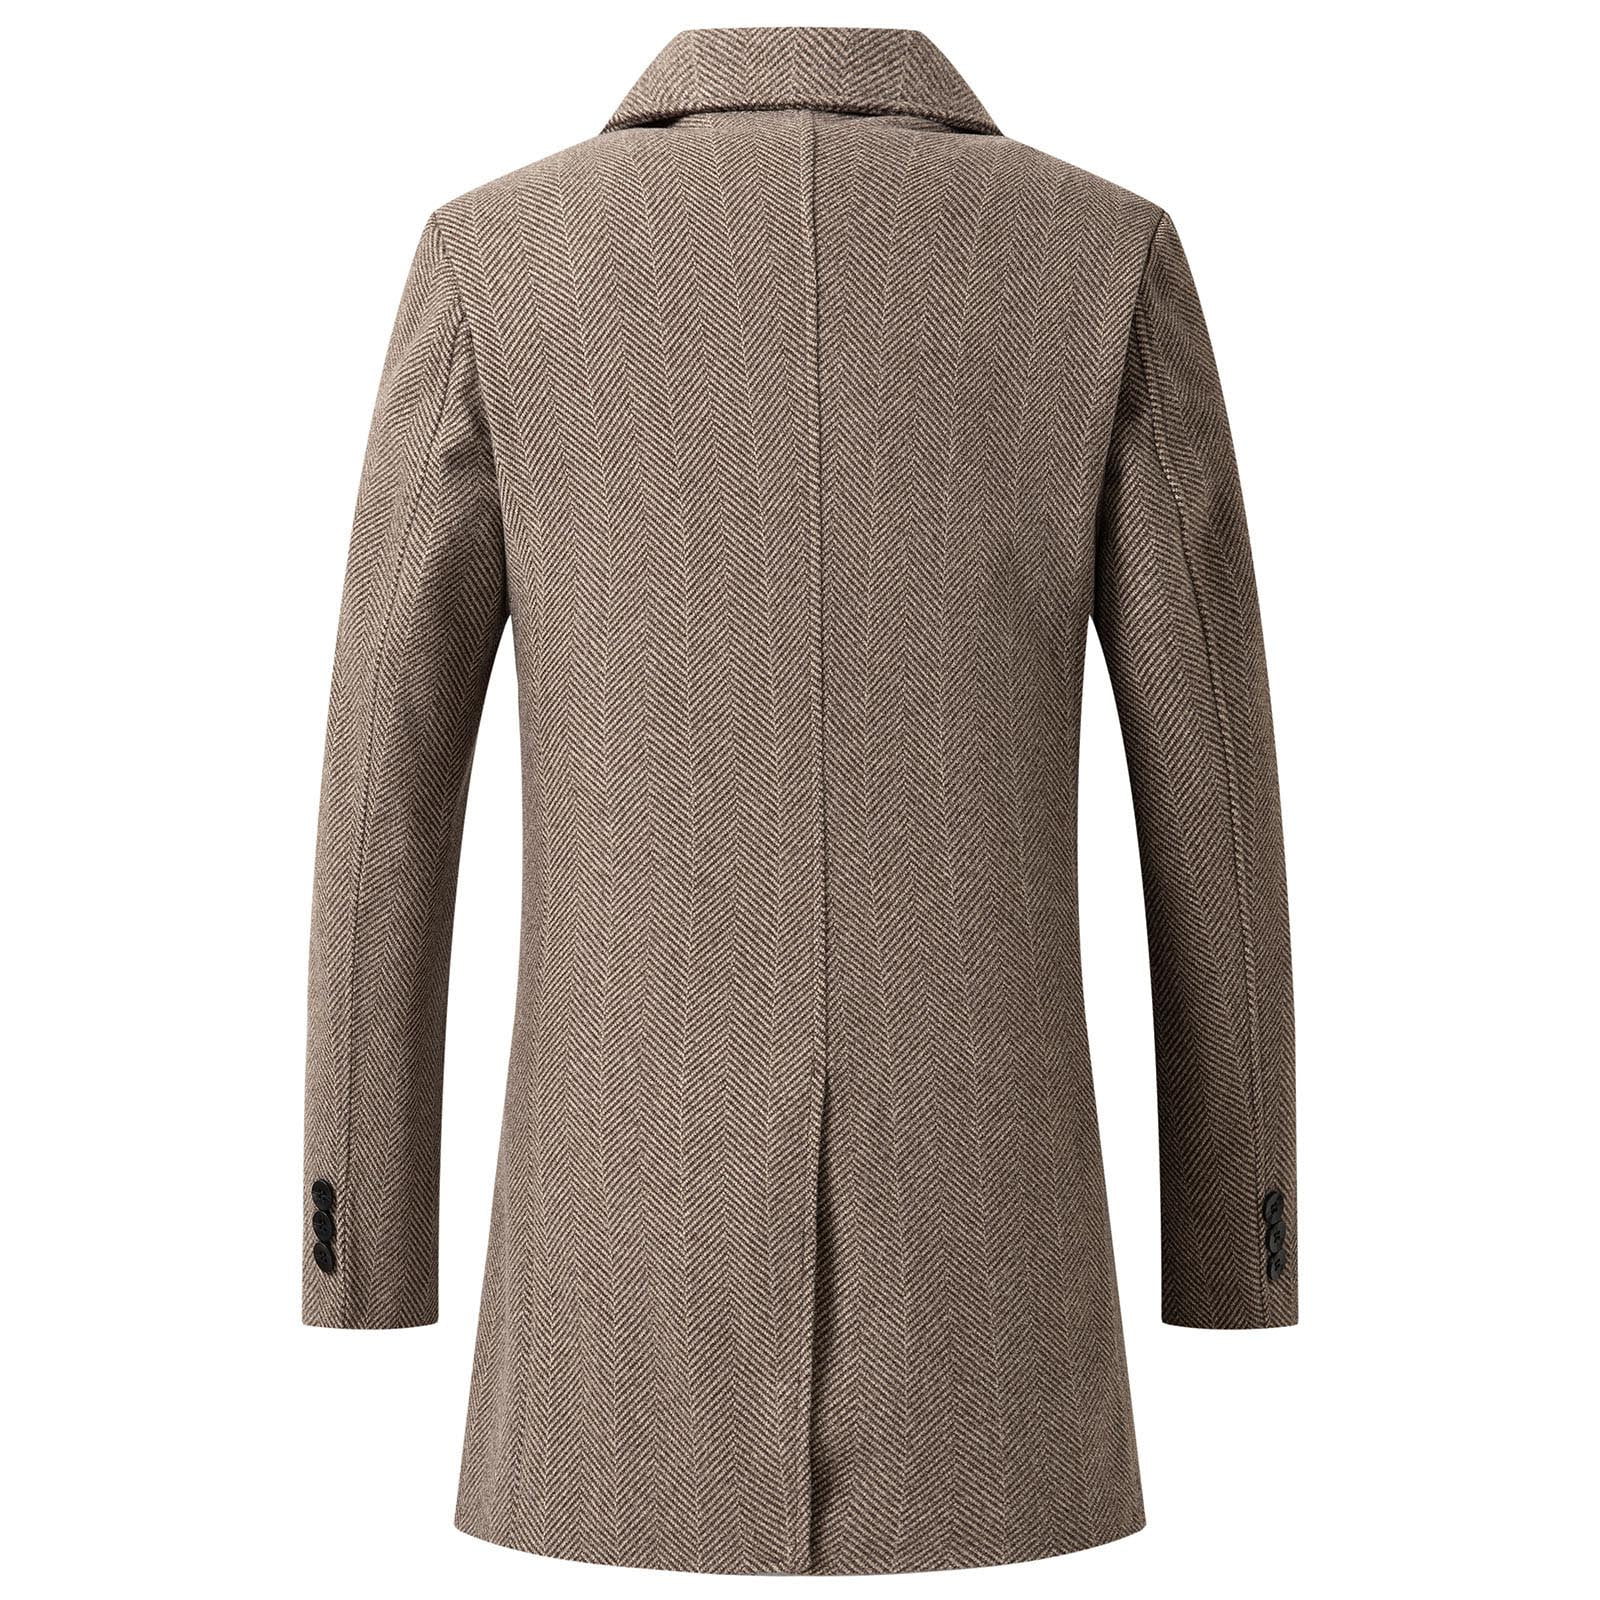 ZHPUAT Men's Wool Overcoat Long Pea Coat Winter Trench Coat Slim